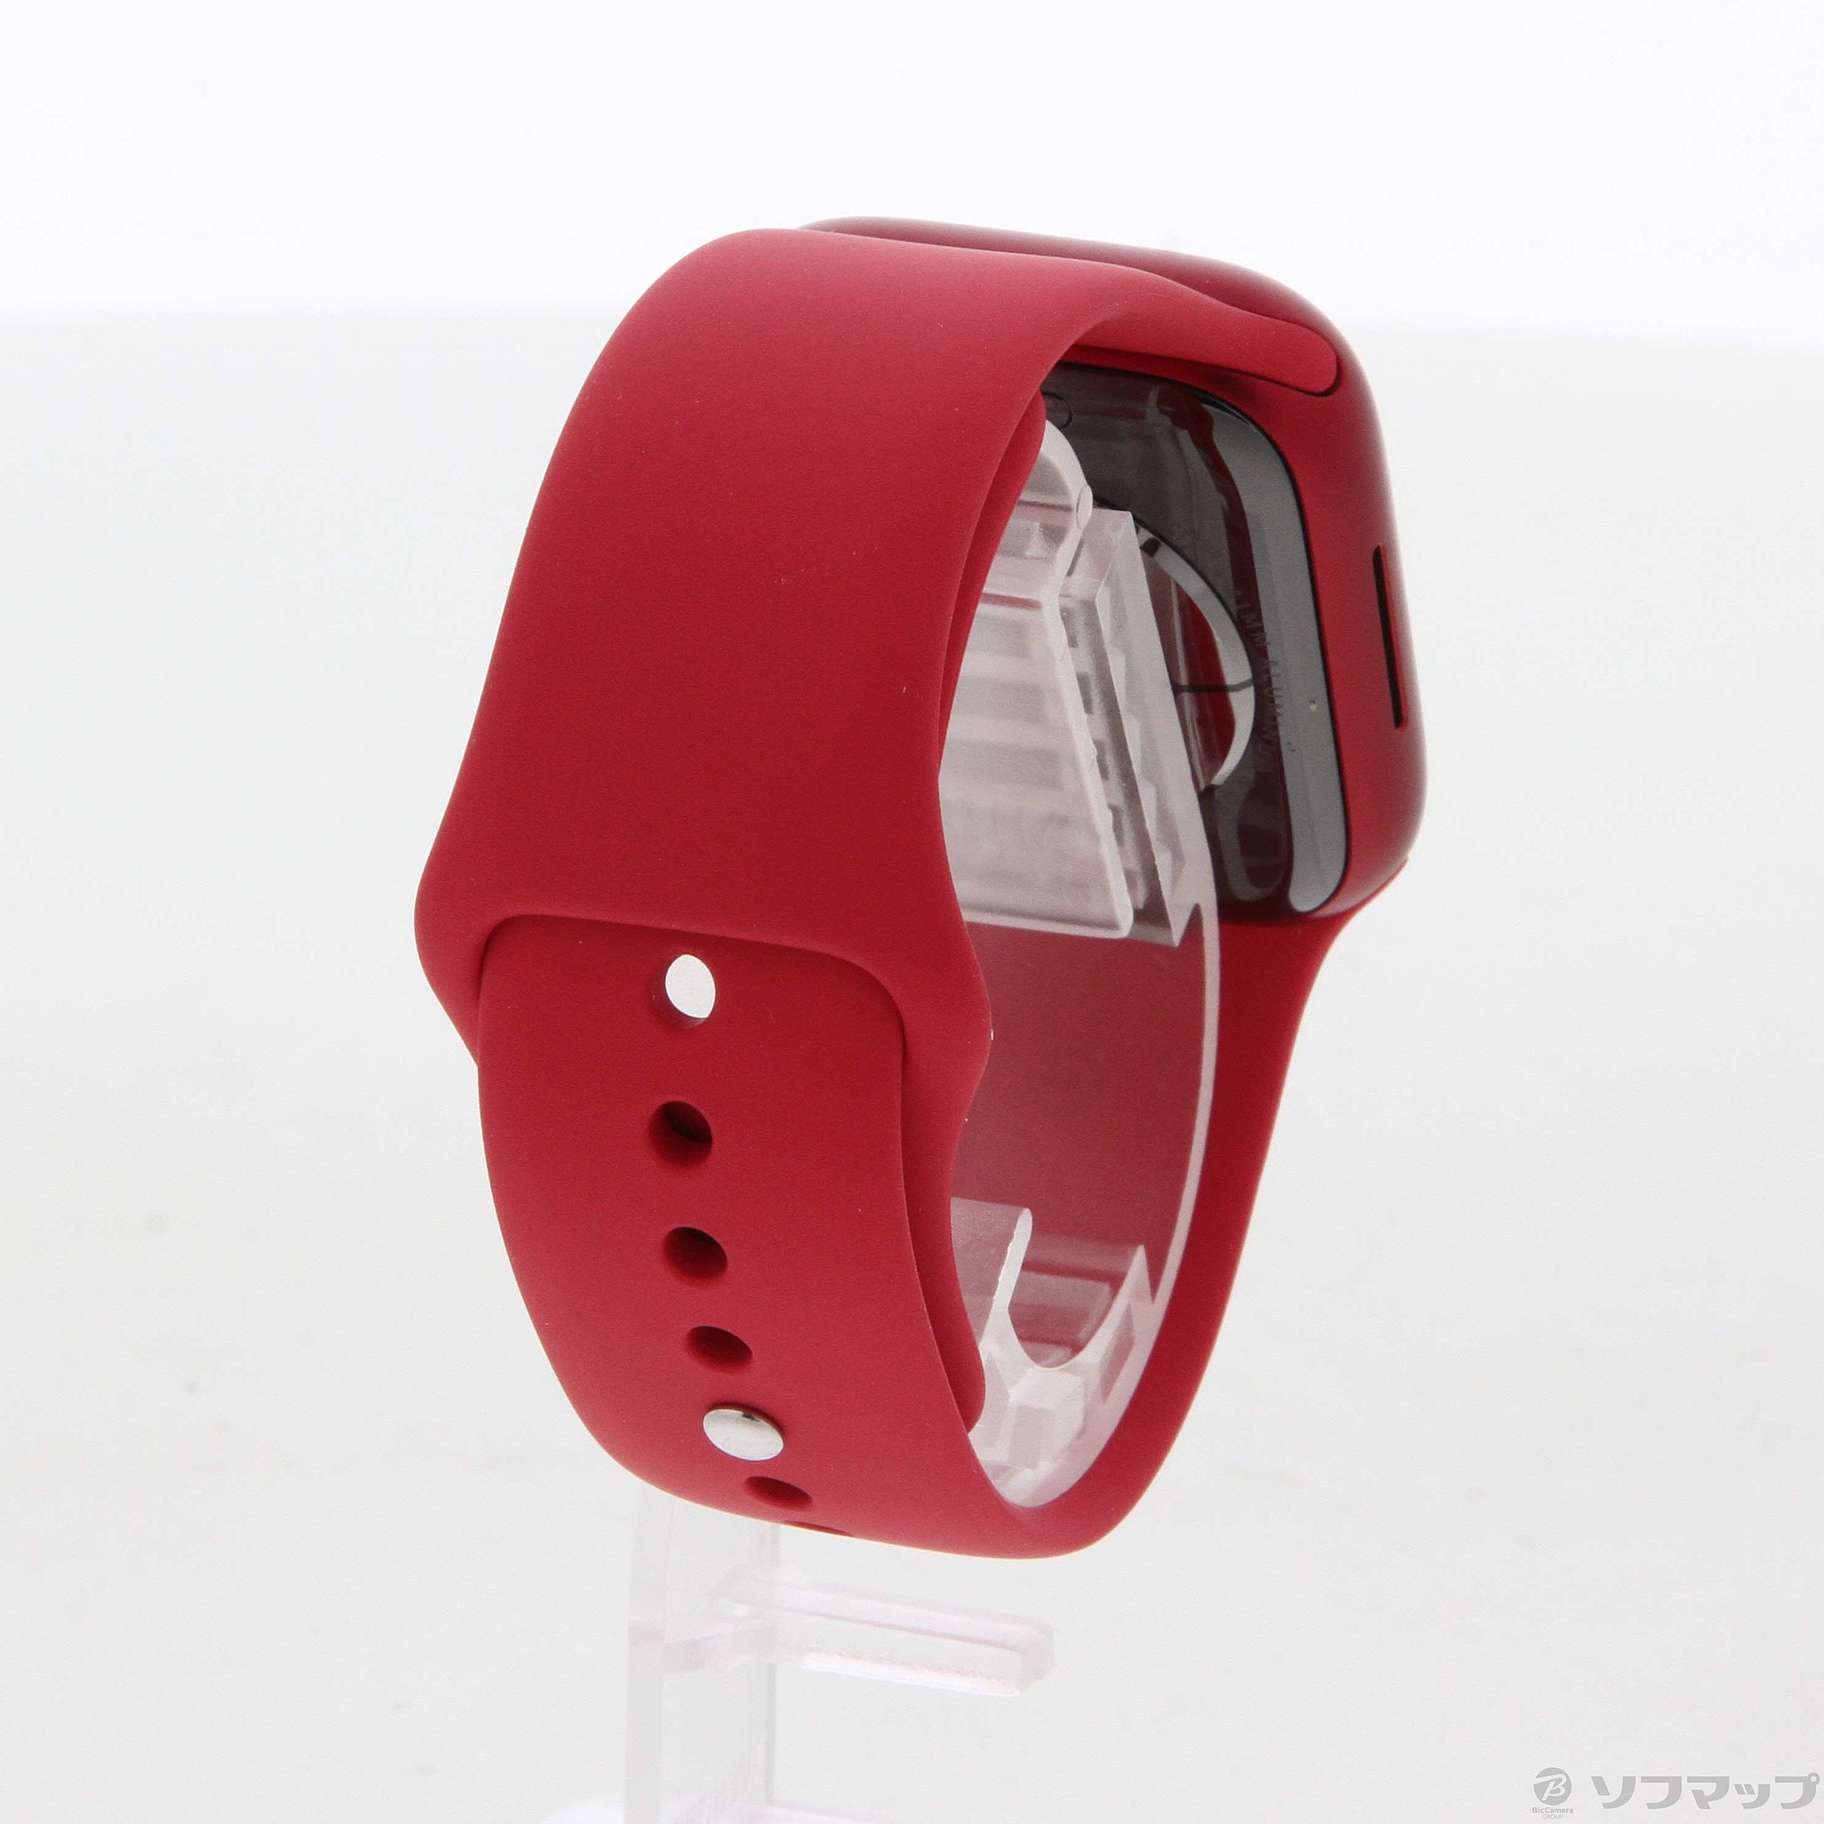 中古】Apple Watch Series 7 GPS 41mm (PRODUCT)REDアルミニウムケース ...